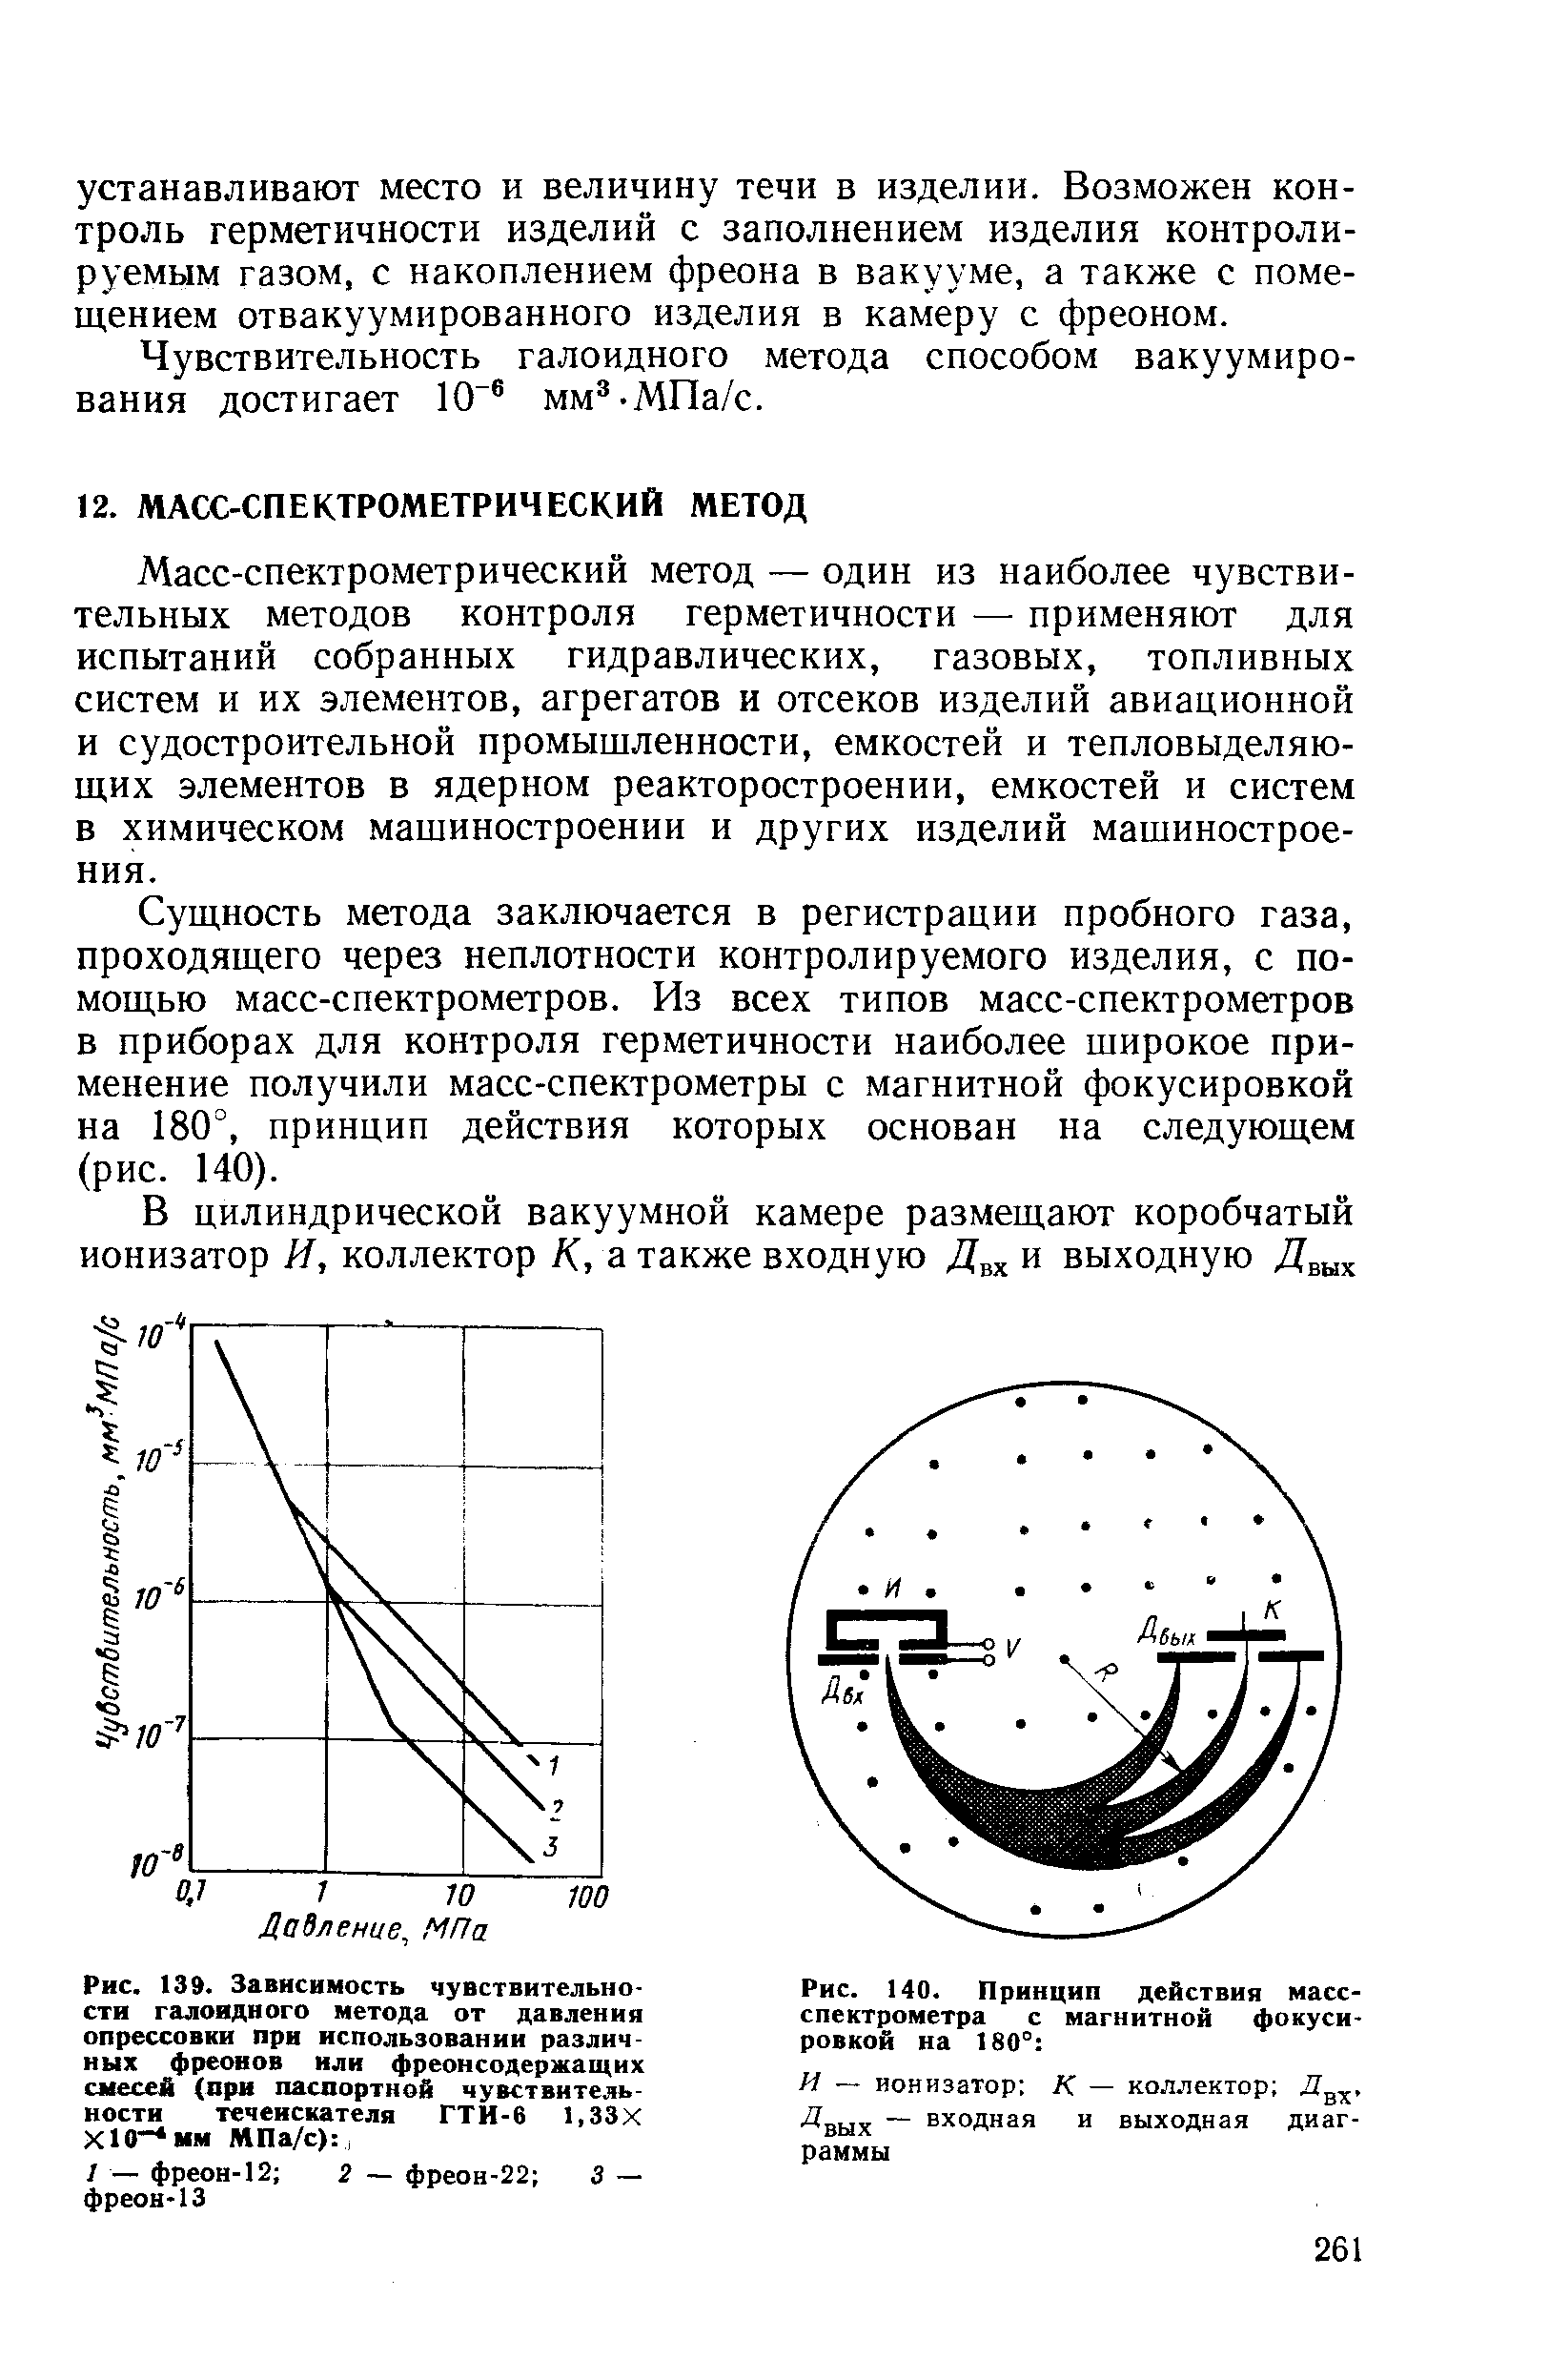 Рис. 140. Принцип действия масс-спектрометра с магнитной фокусировкой на 180° 
